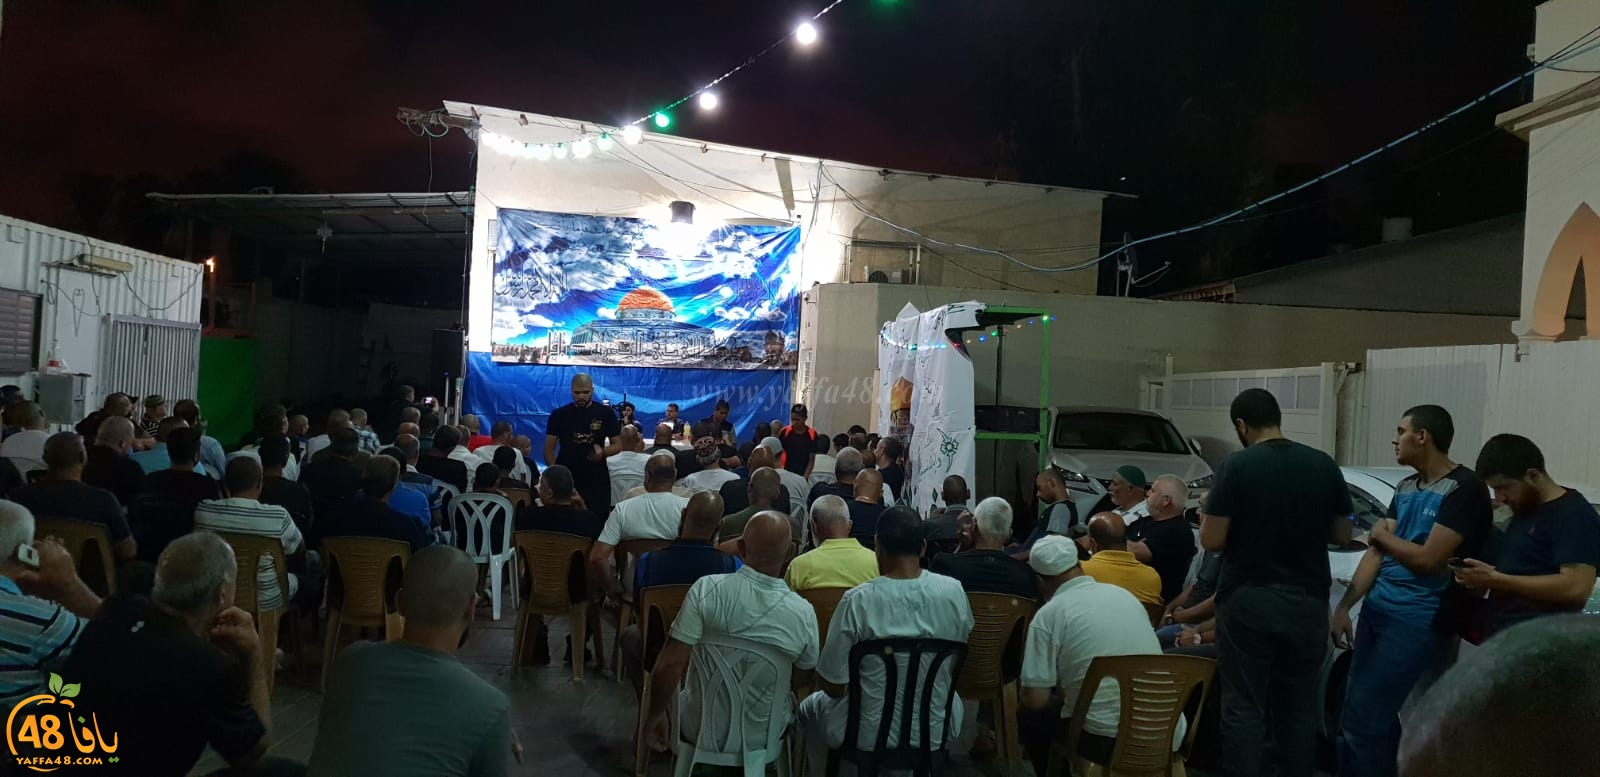 بالصور: خيمة الهدى الدعوية بيافا تُنظم أمسية دينية في ضيافة عائلة دكة